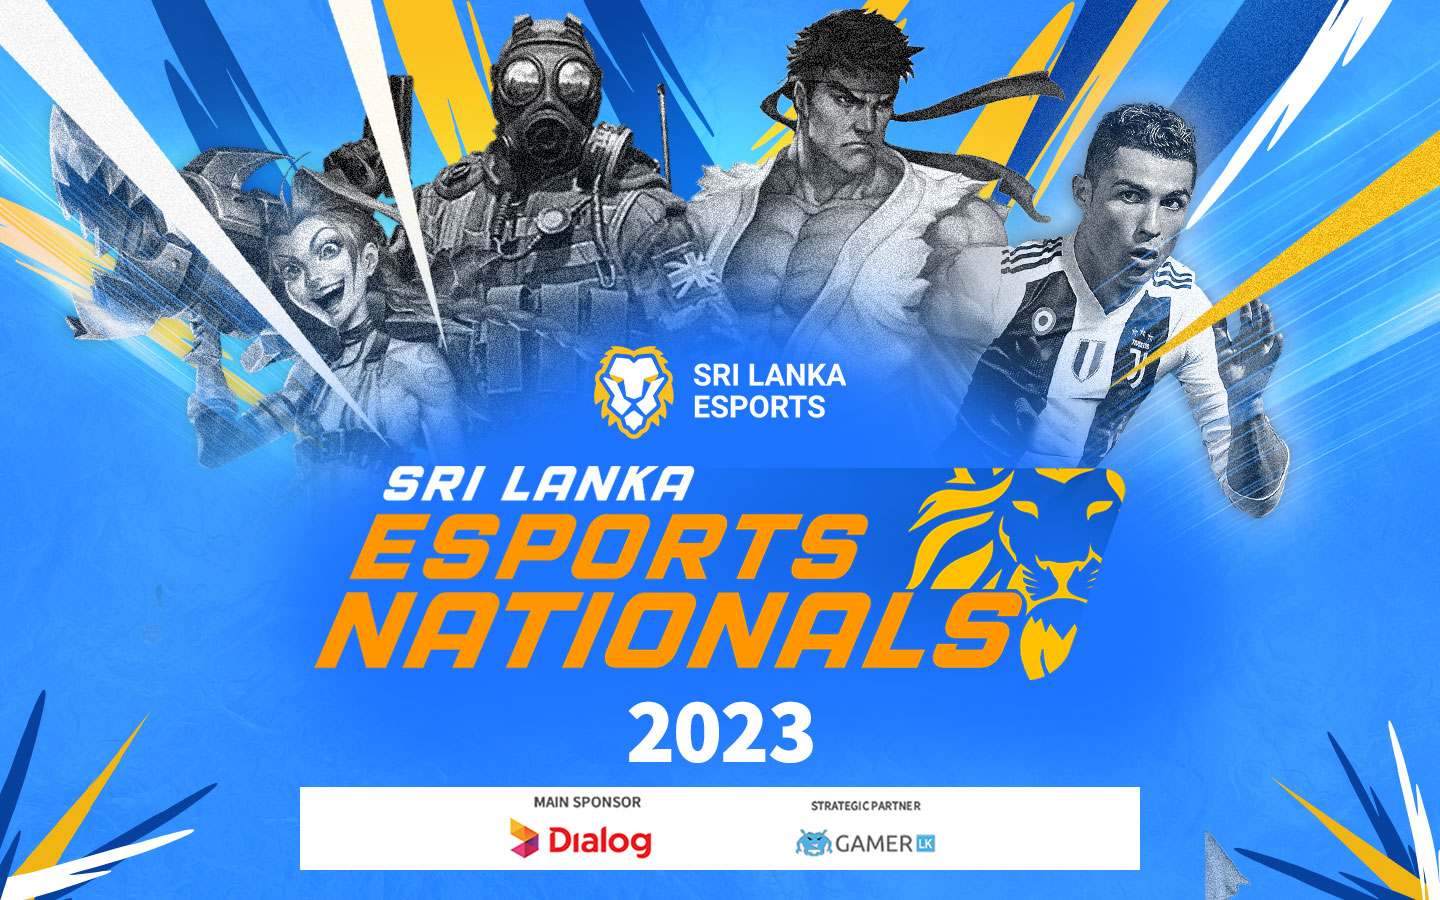 Sri Lanka Esports Nationals 2023